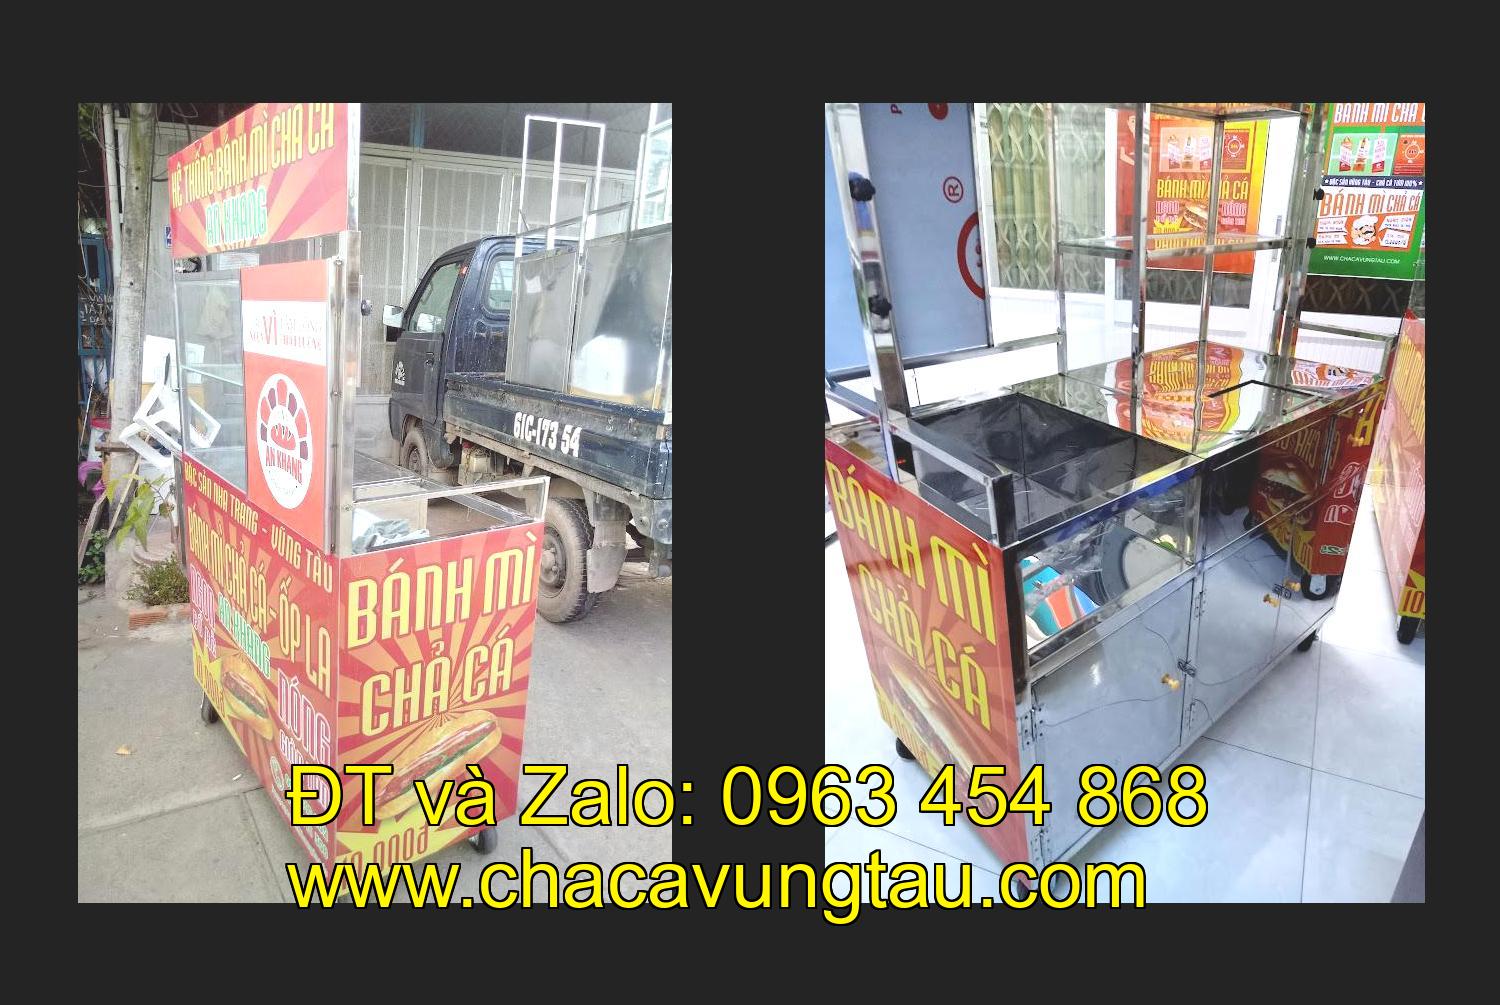 Bán xe bánh mì chả cá tại tỉnh Lai Châu